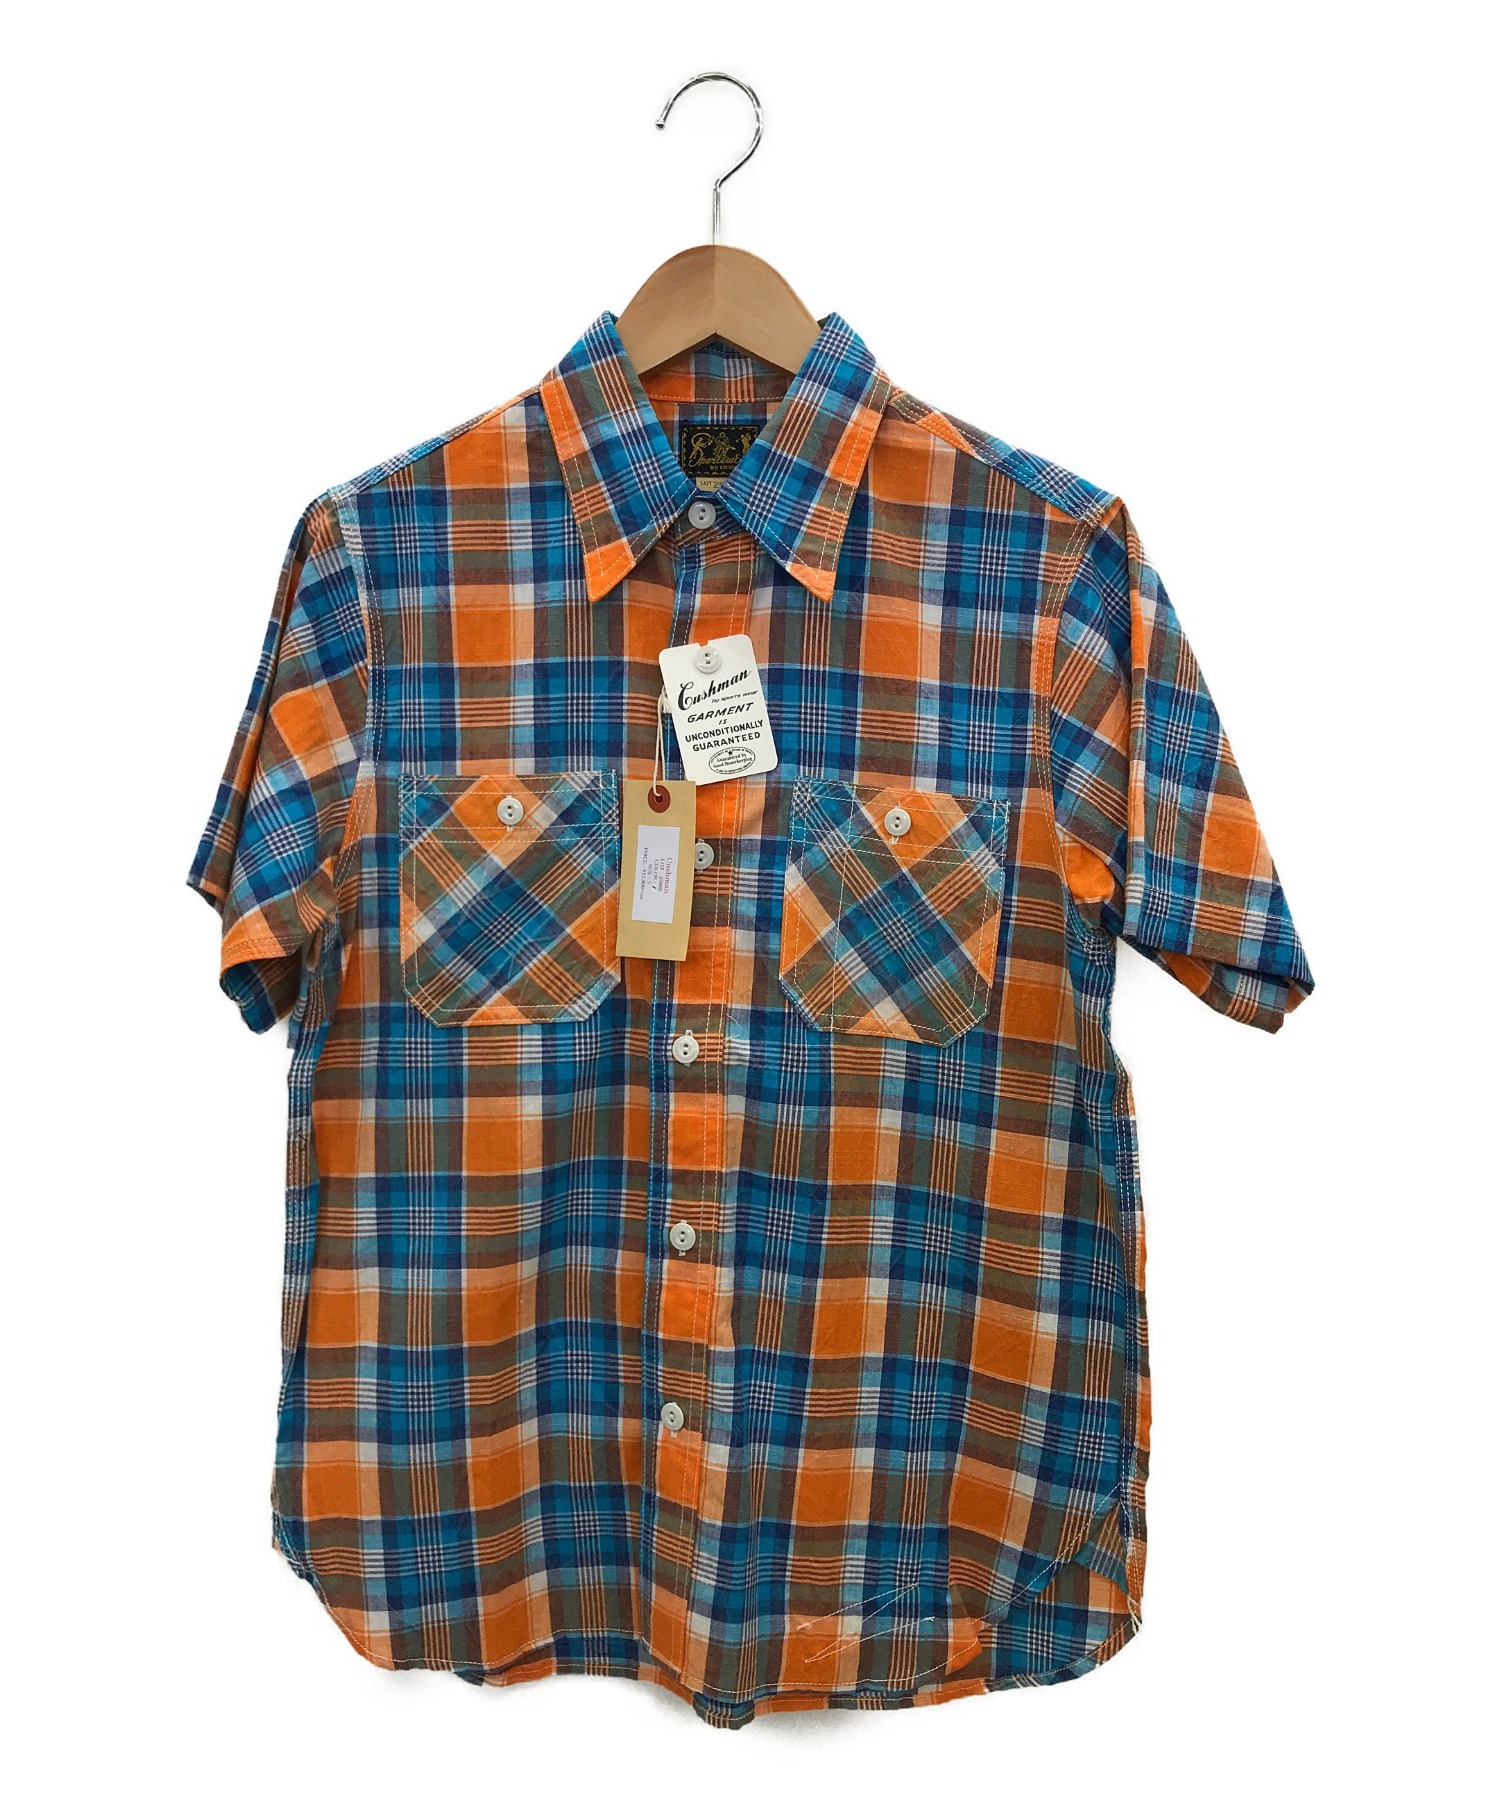 Cushman (クッシュマン) 半袖ワークシャツ オレンジ×ブルー サイズ:S 春夏物